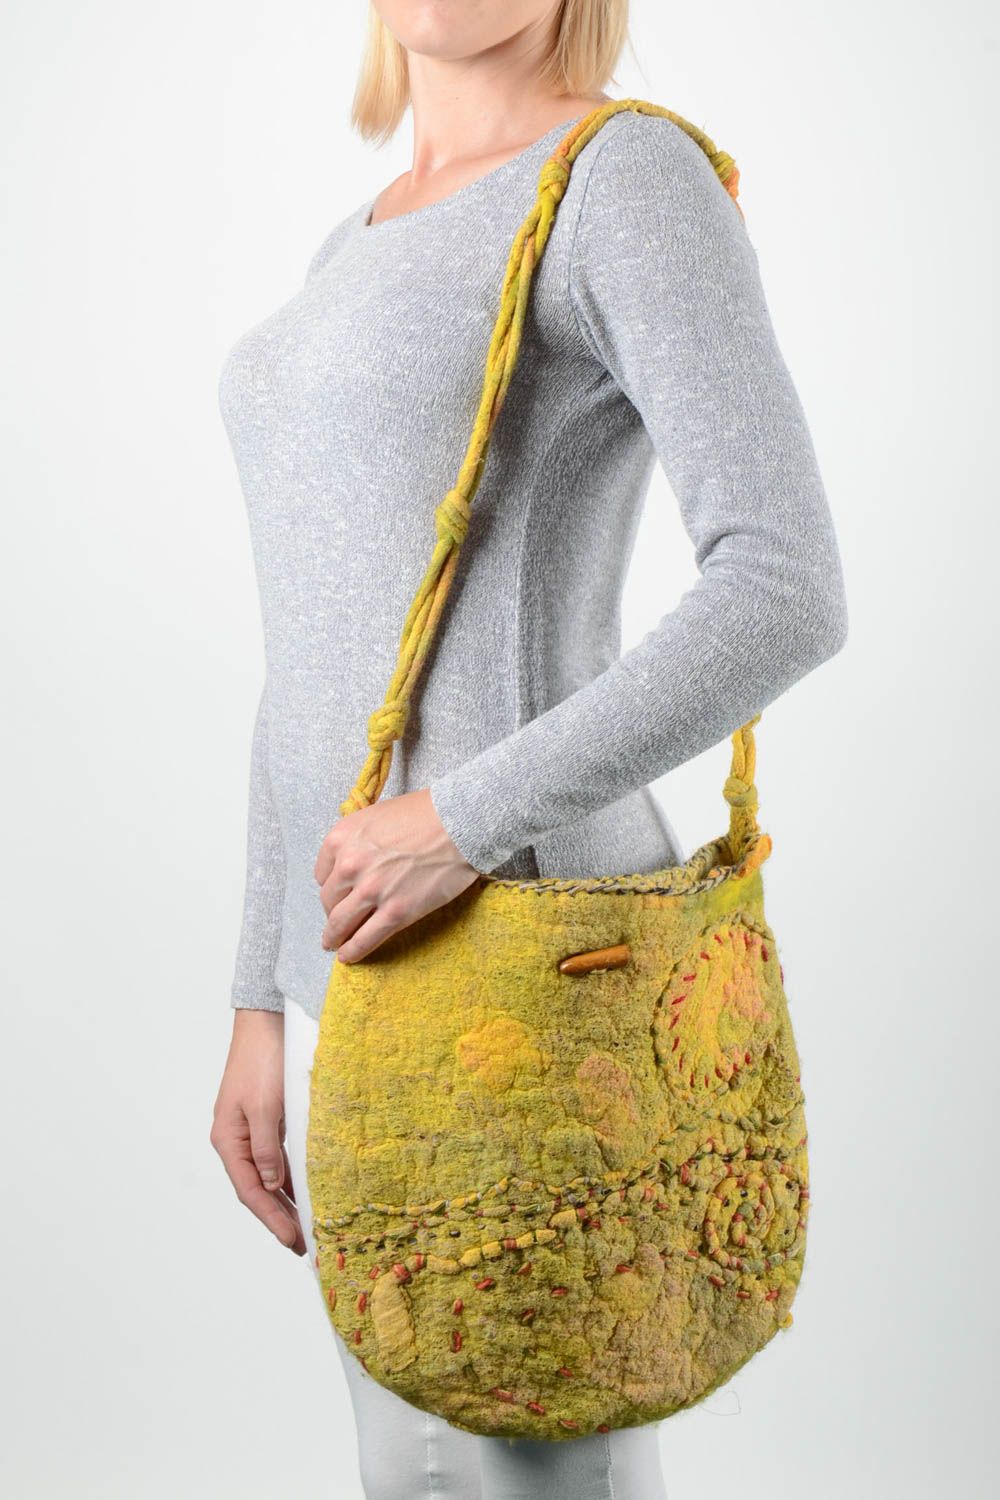 Сумка из шерсти сумка ручной работы женская валяная сумка через плече желтая фото 1